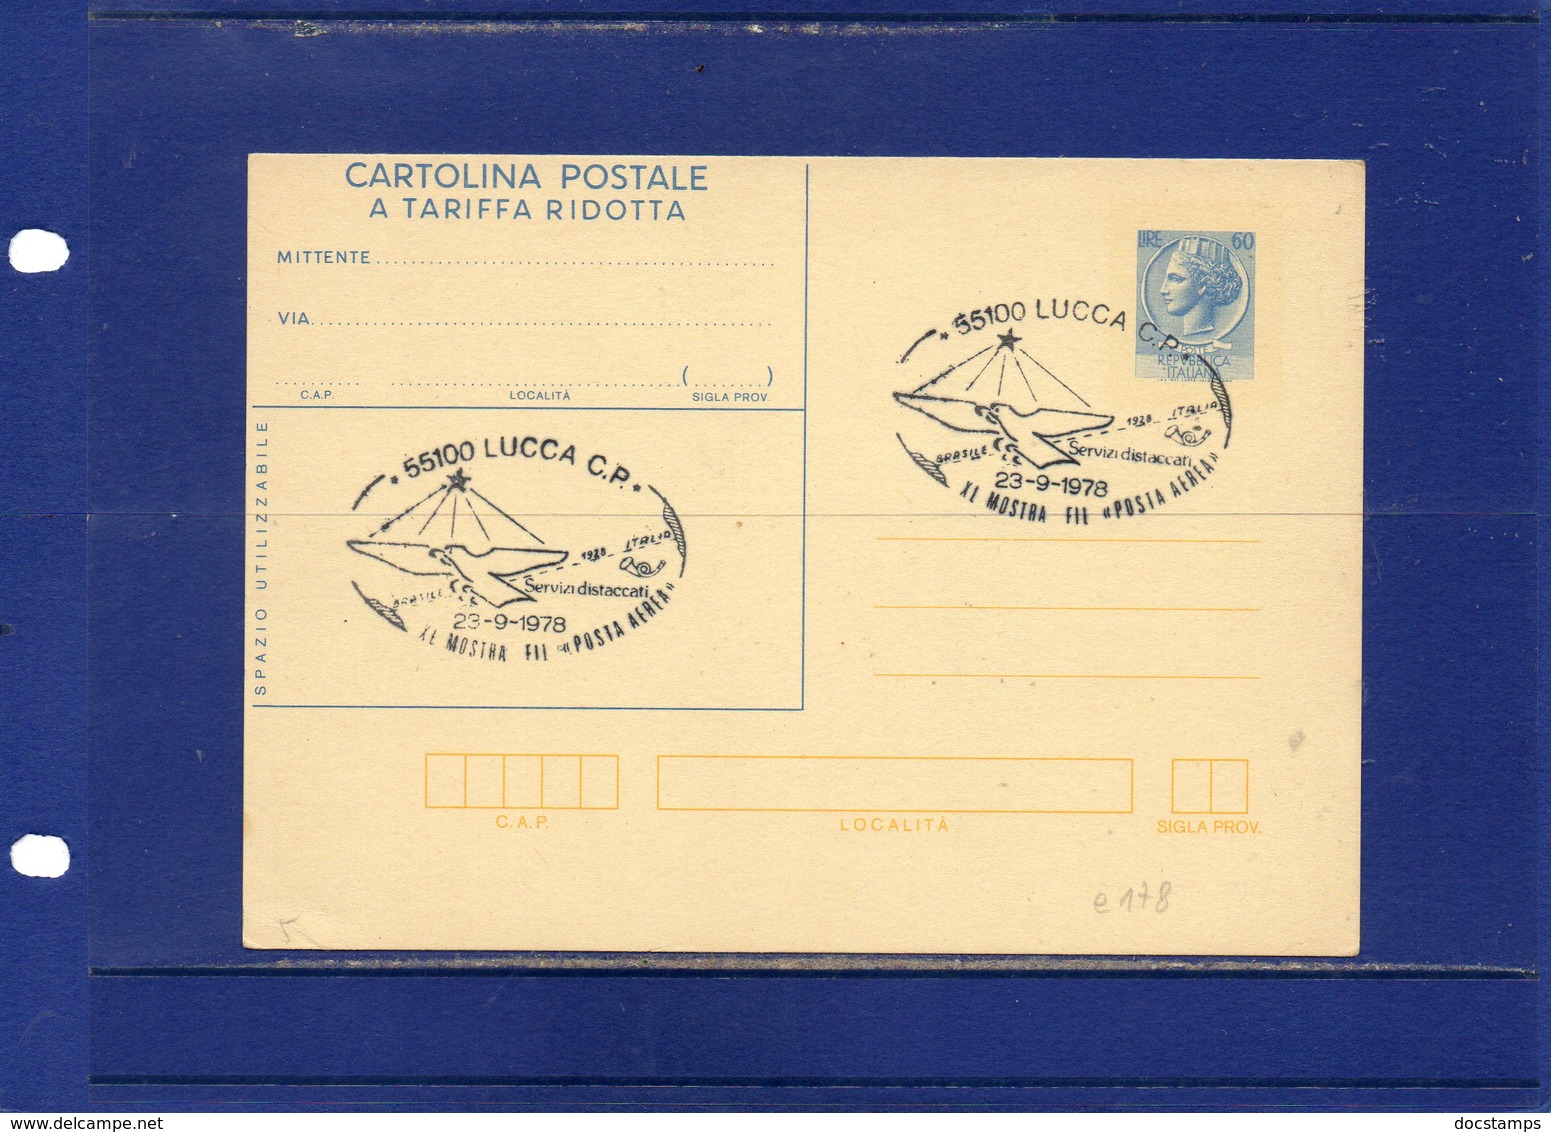 ##(ANT10)-1978-cartolina Postale Tariffa Ridotta L.60 Filagrano C178 Annullo Speciale Lucca-Mostra Posta Aerea + Retro - Ganzsachen